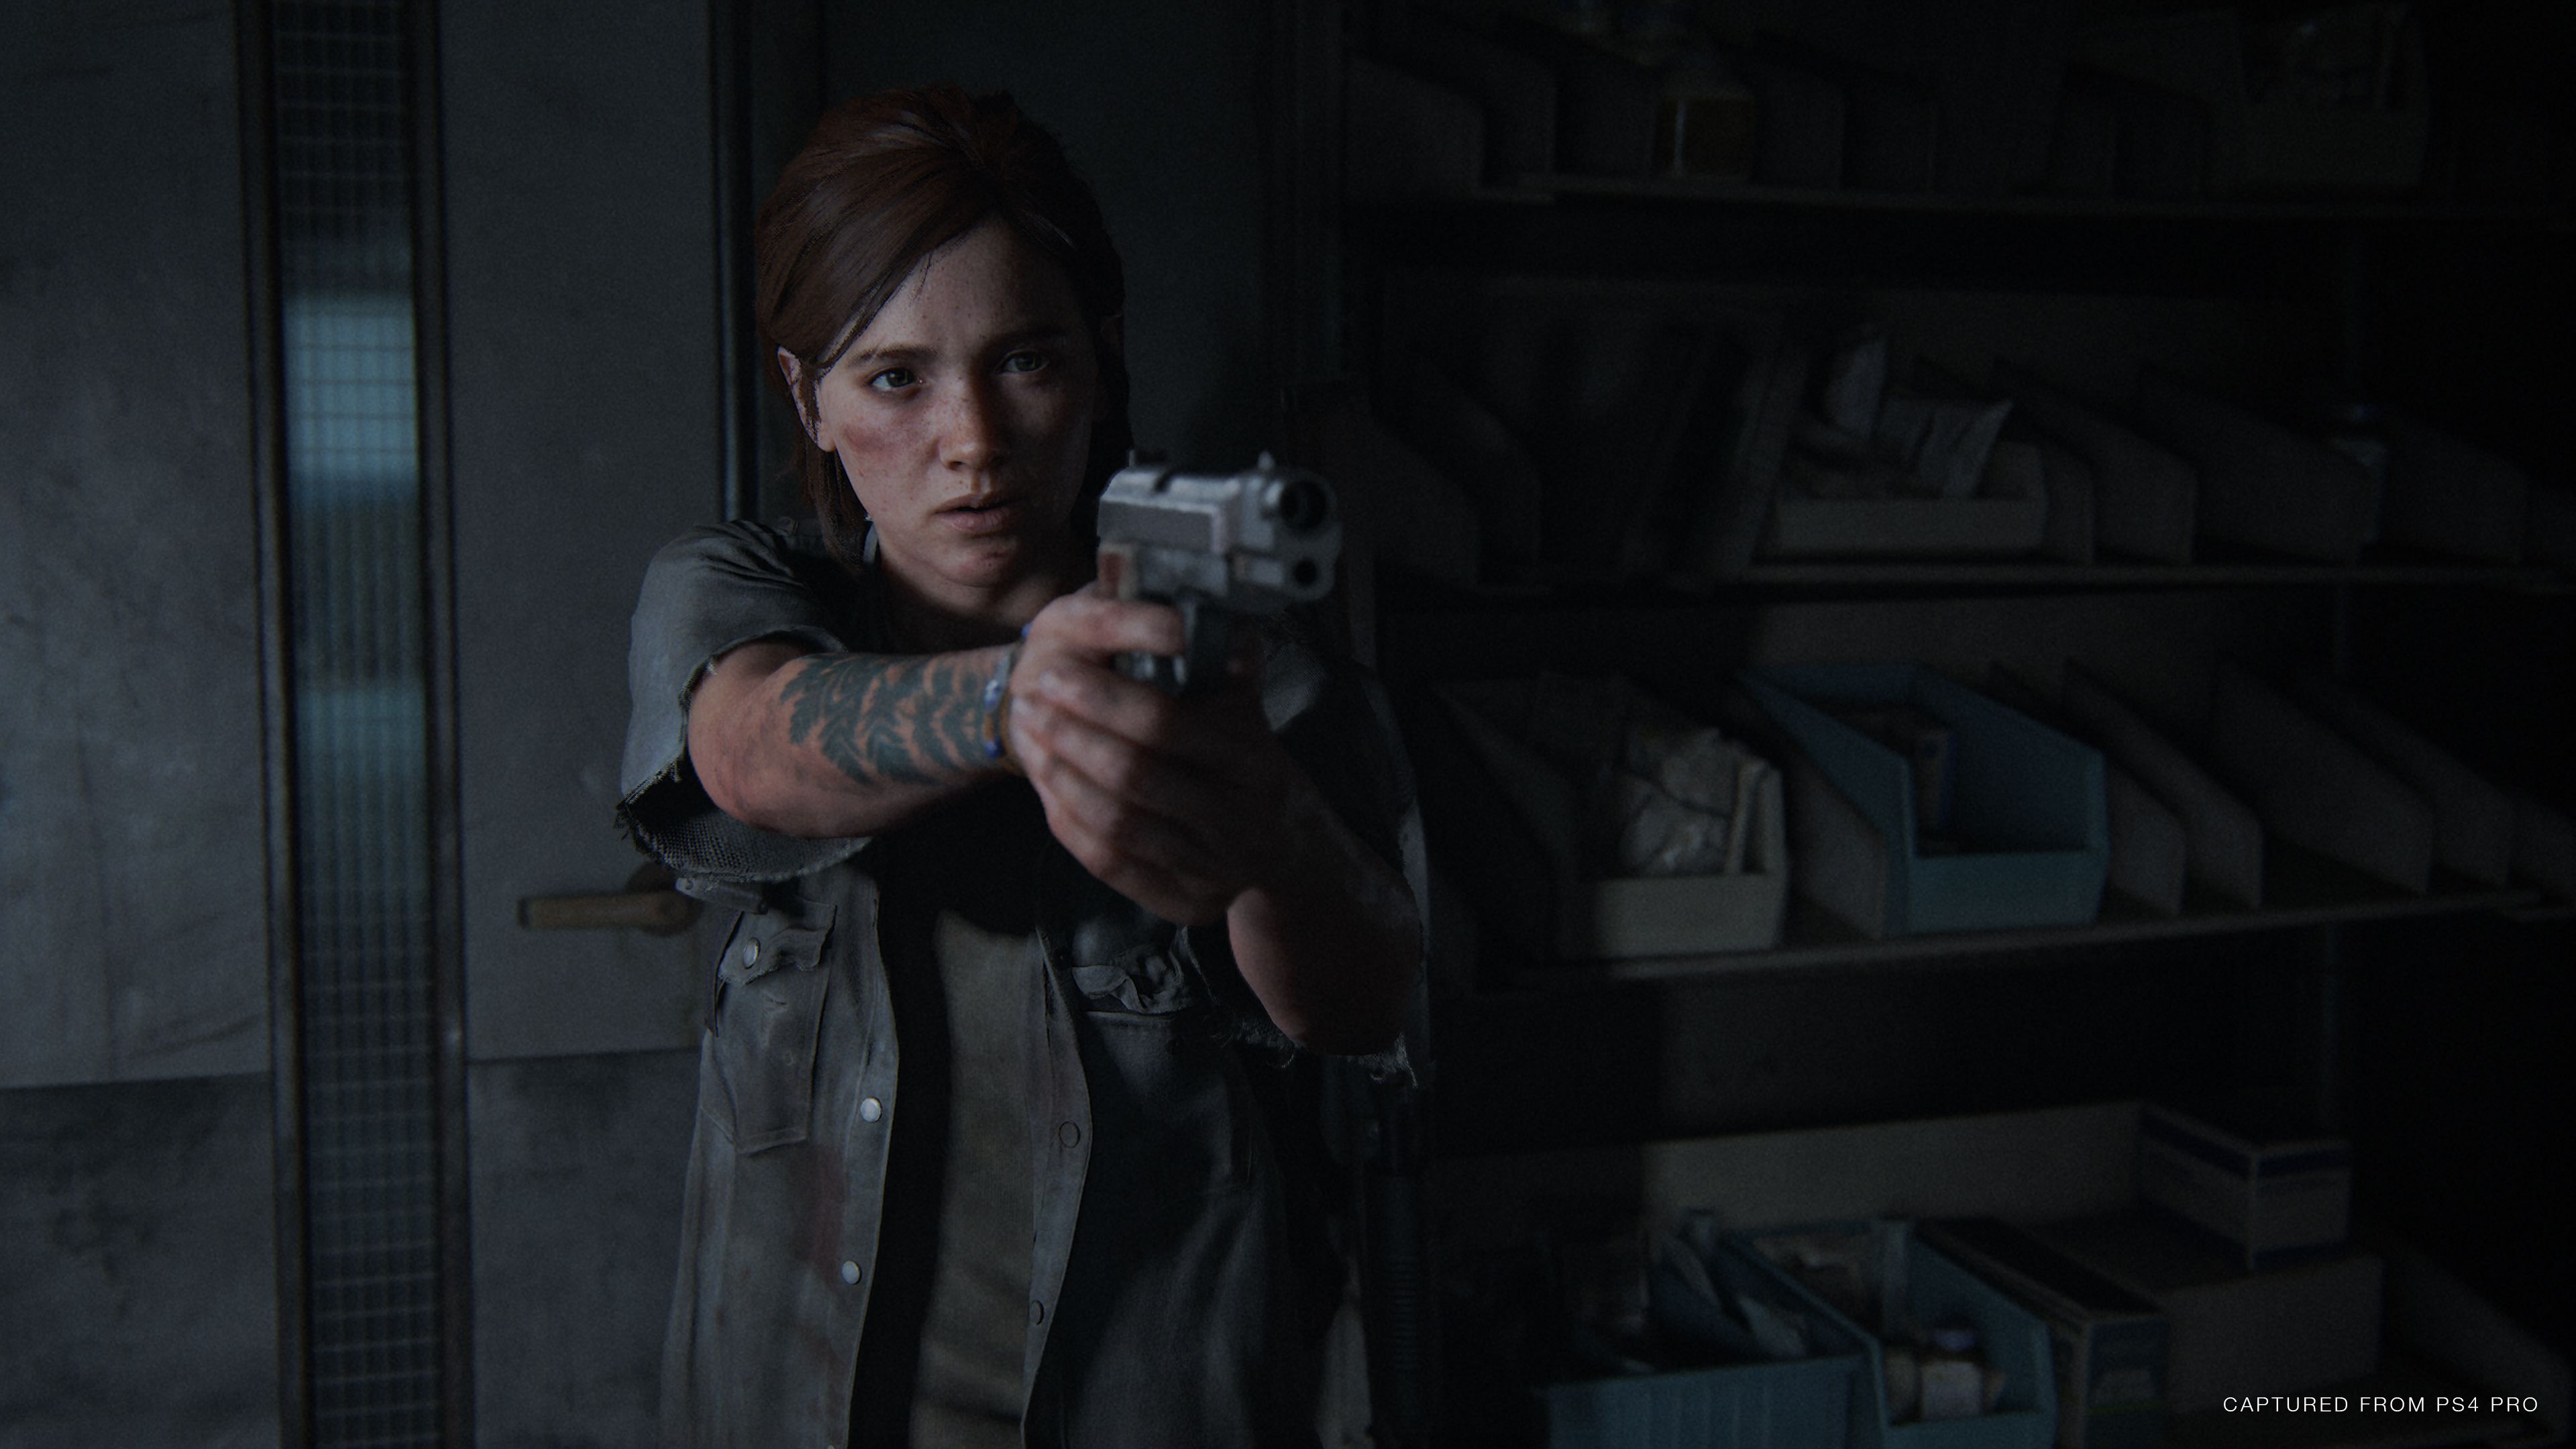 The Last of Us Part II  Sony revela quanto tempo se passou desde o  primeiro jogo